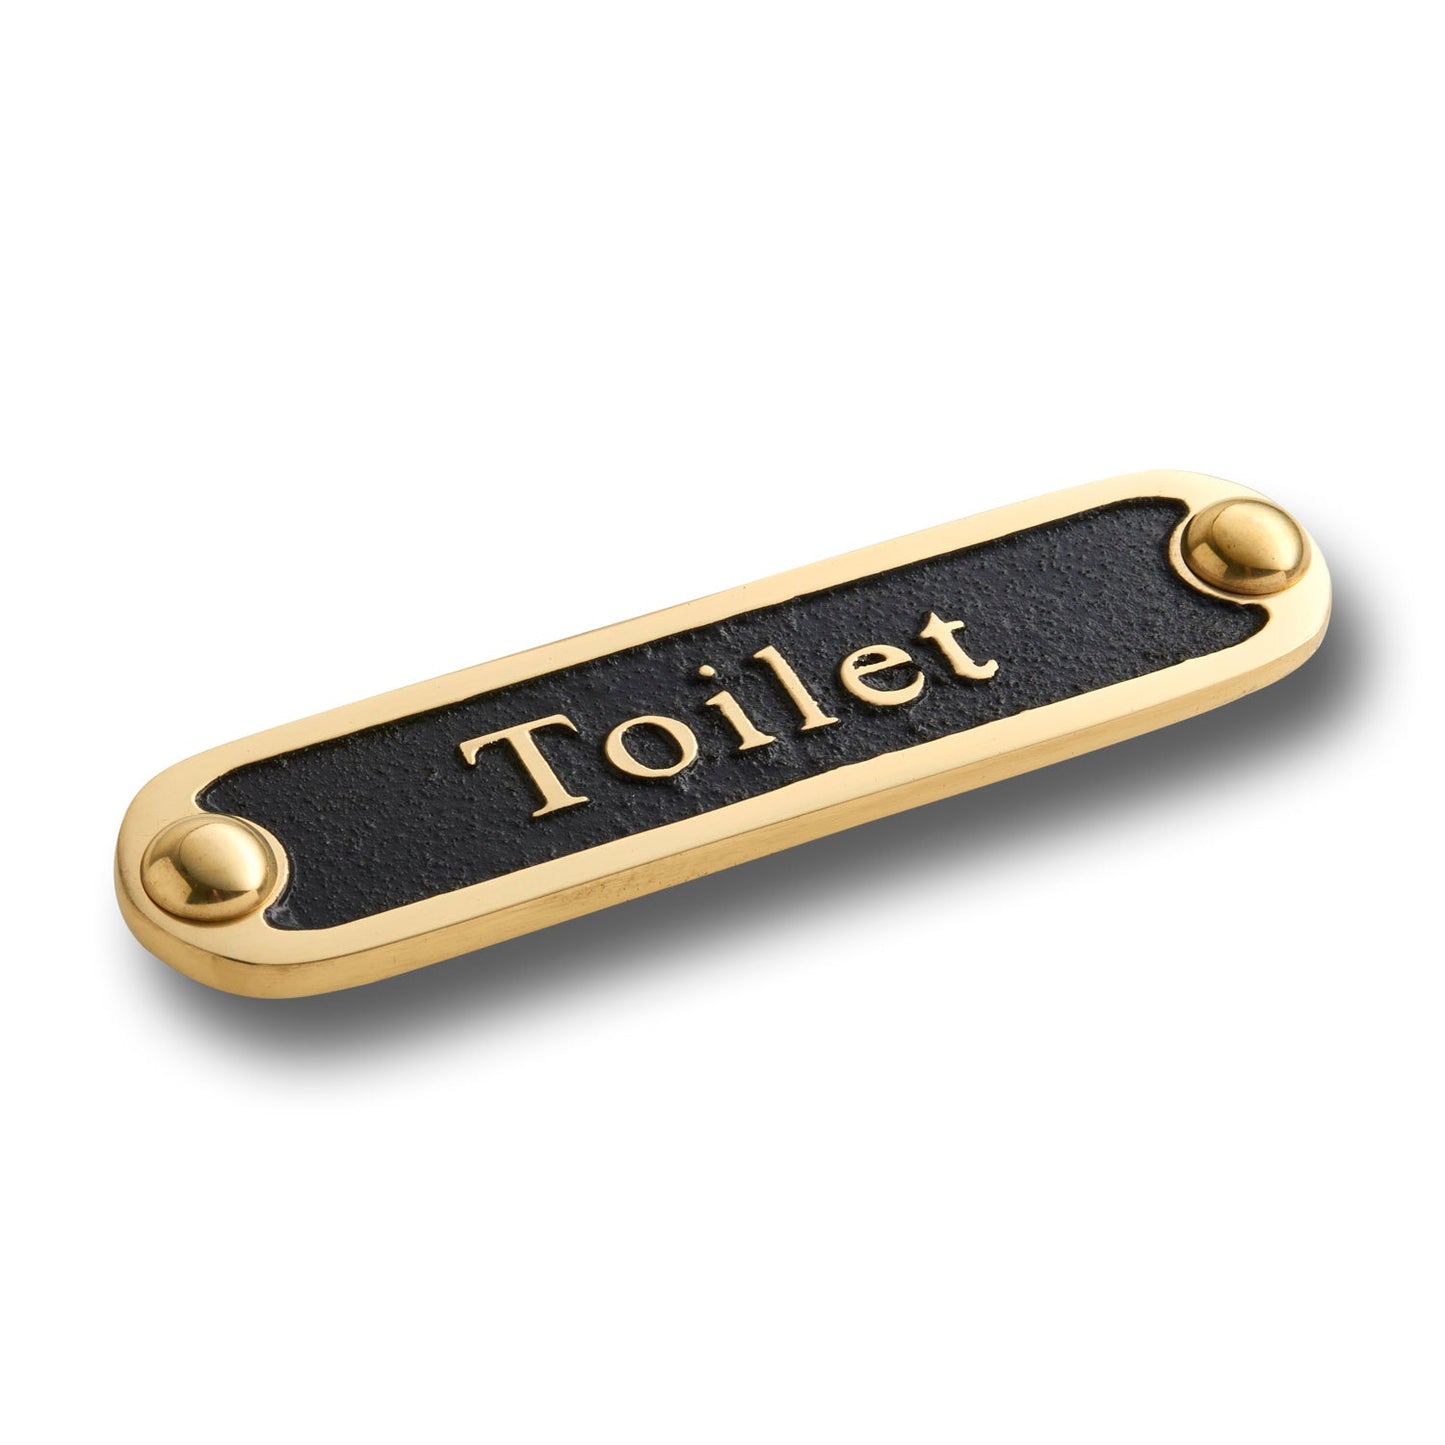 'Toilet' Door Sign - The Metal Foundry